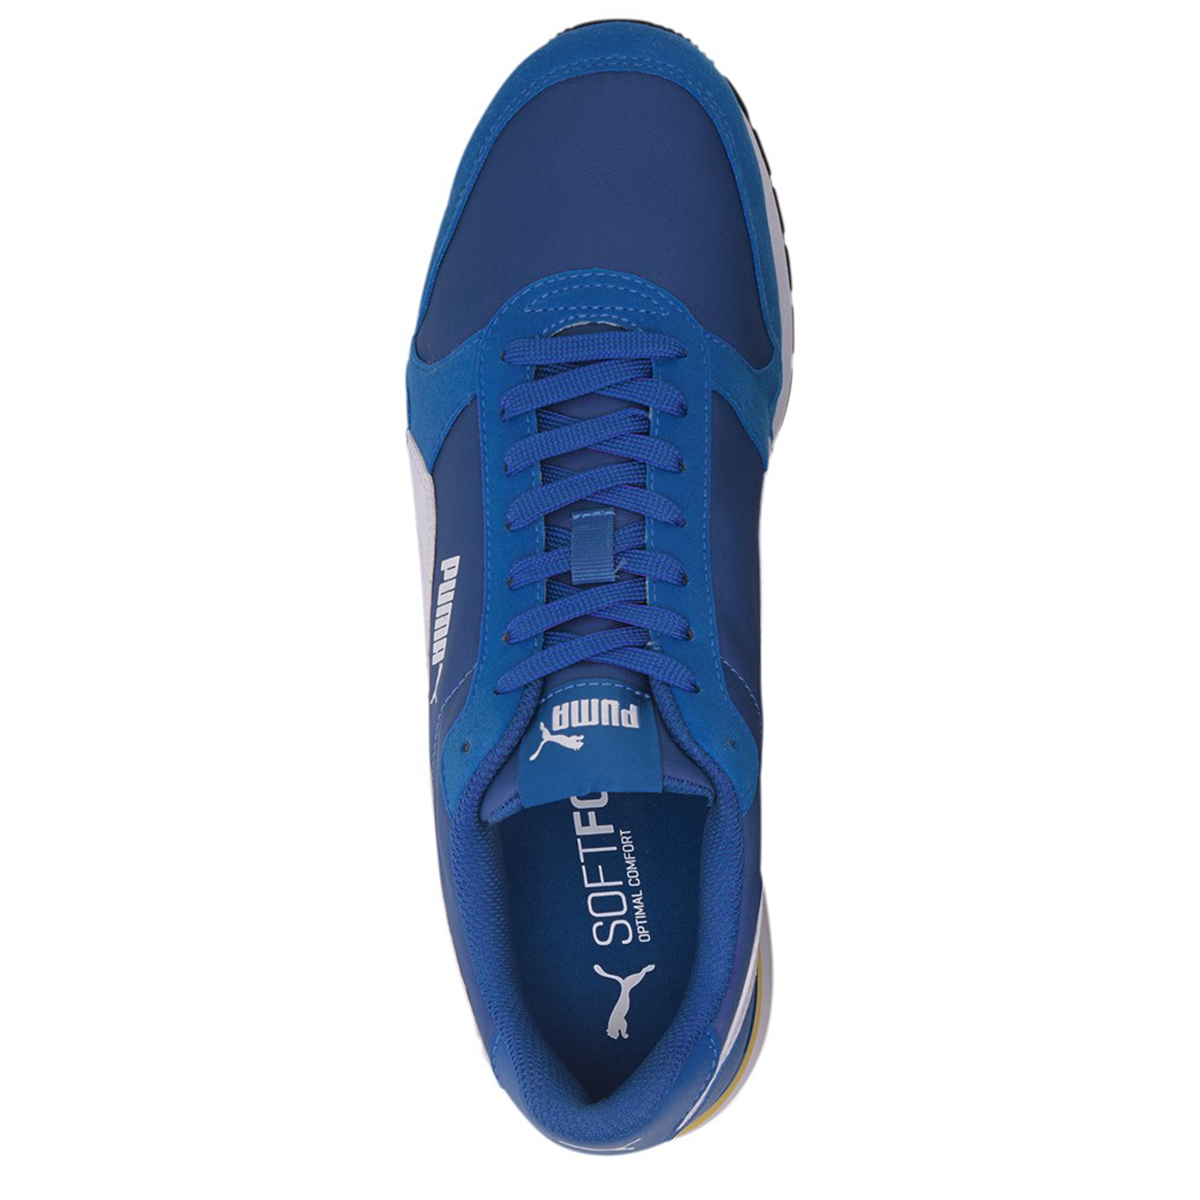 Puma ST Runner v2 NL Sneaker Unisex Turnschuh blau 365278 32